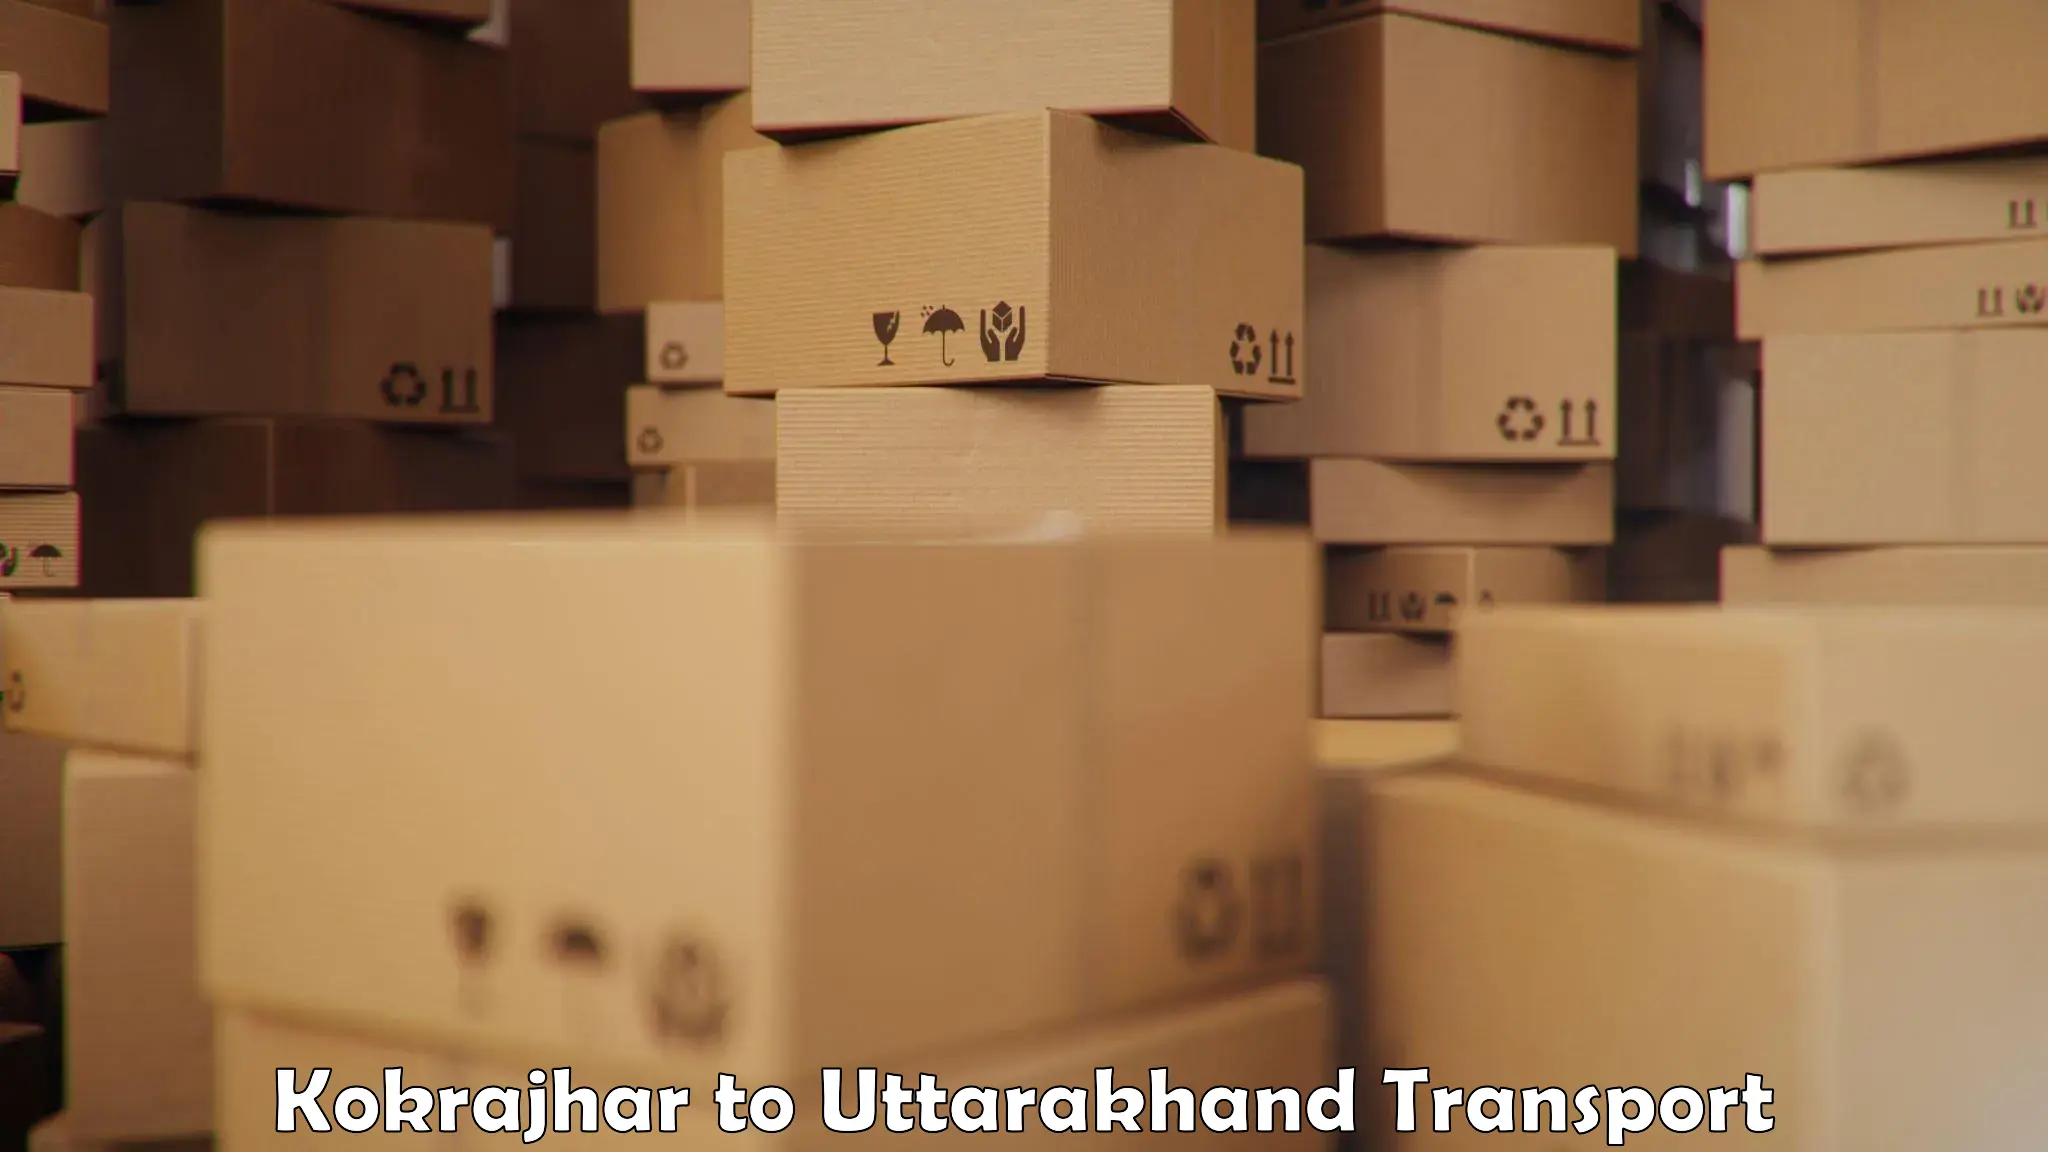 Container transport service Kokrajhar to Bageshwar